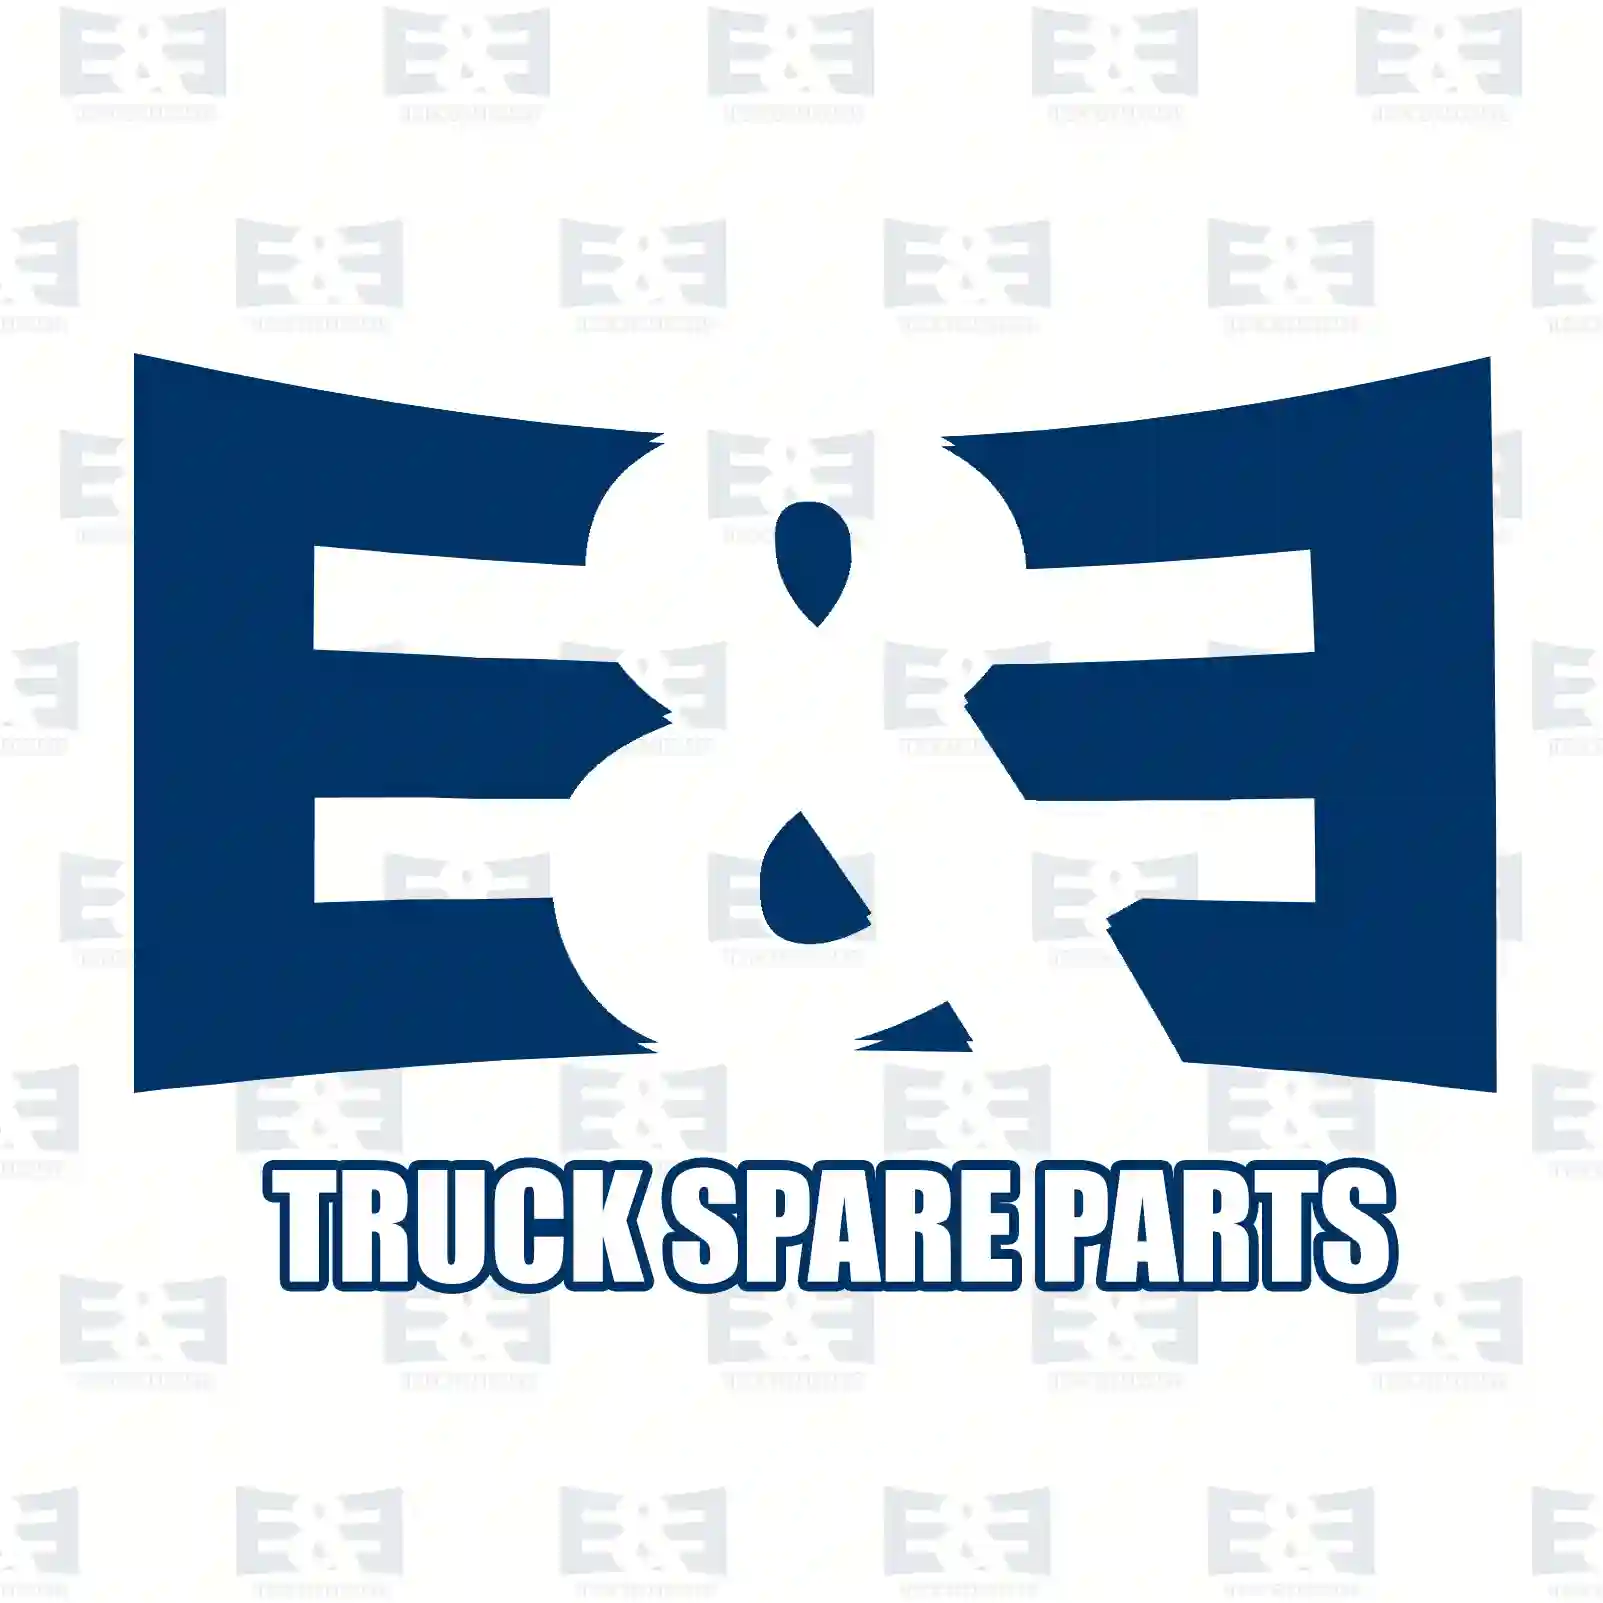 Level sensor, expansion tank, 2E2283465, 2288684, 2553061 ||  2E2283465 E&E Truck Spare Parts | Truck Spare Parts, Auotomotive Spare Parts Level sensor, expansion tank, 2E2283465, 2288684, 2553061 ||  2E2283465 E&E Truck Spare Parts | Truck Spare Parts, Auotomotive Spare Parts